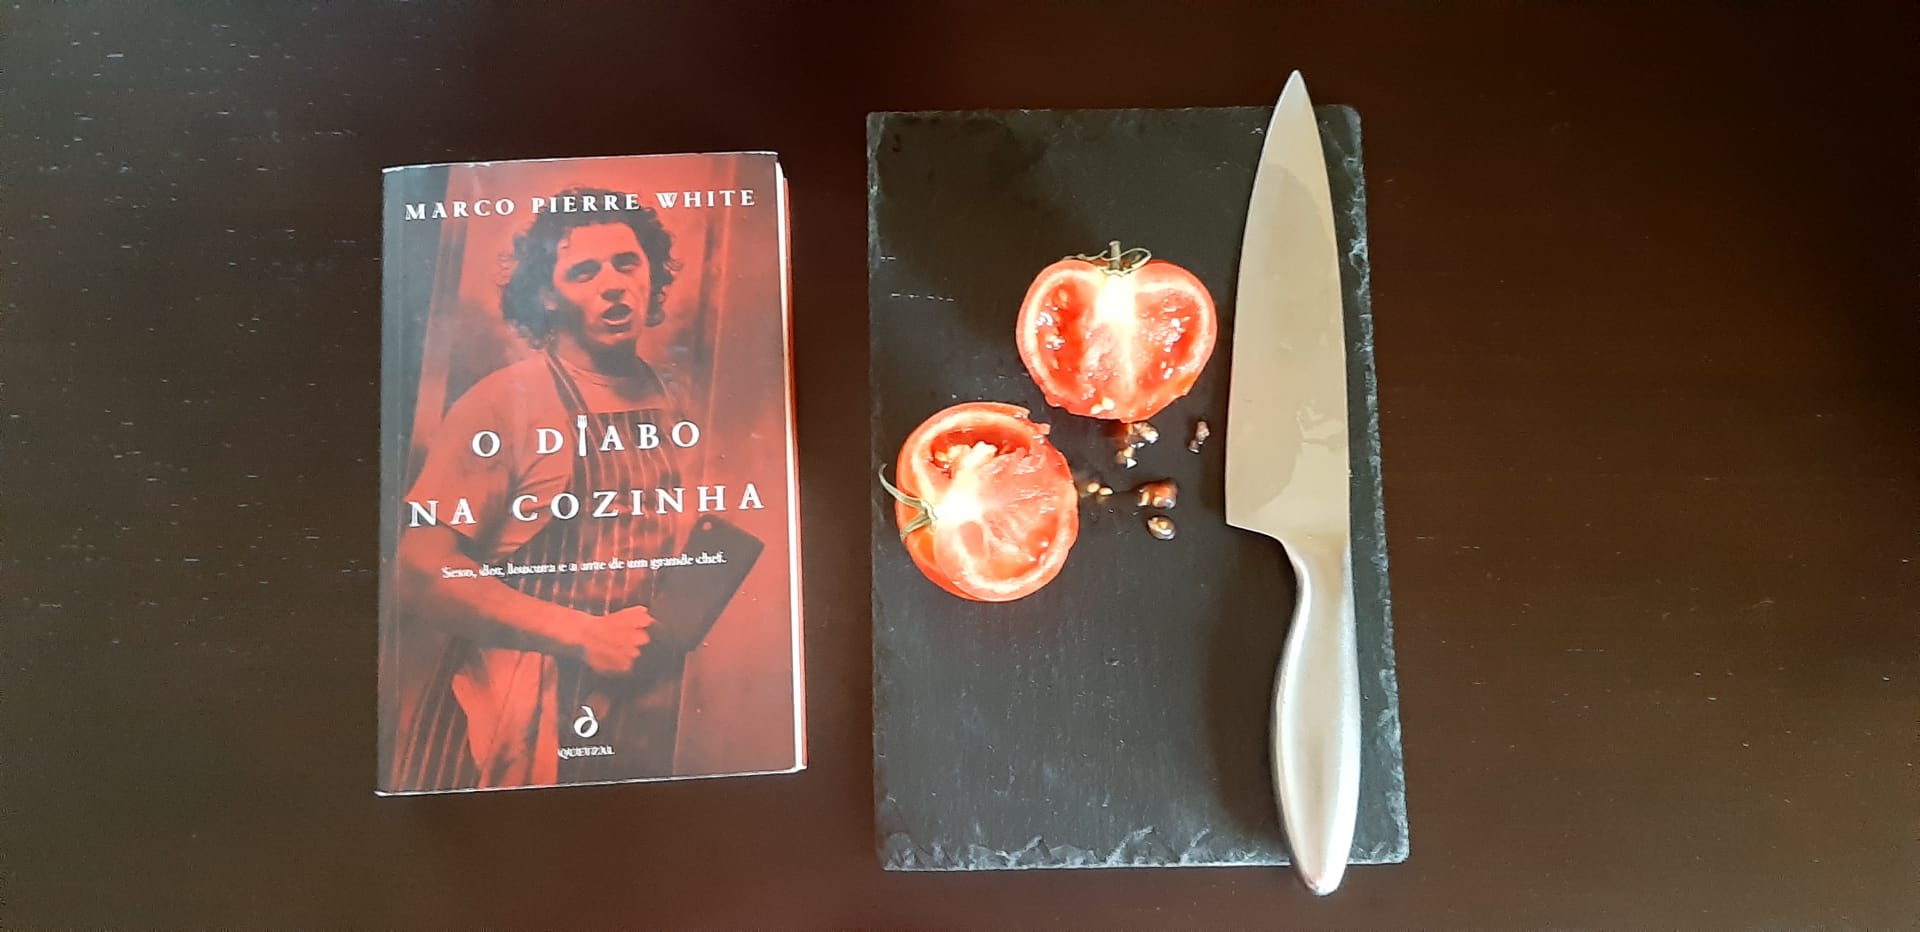 Livros com sabor - "O diabo na cozinha"